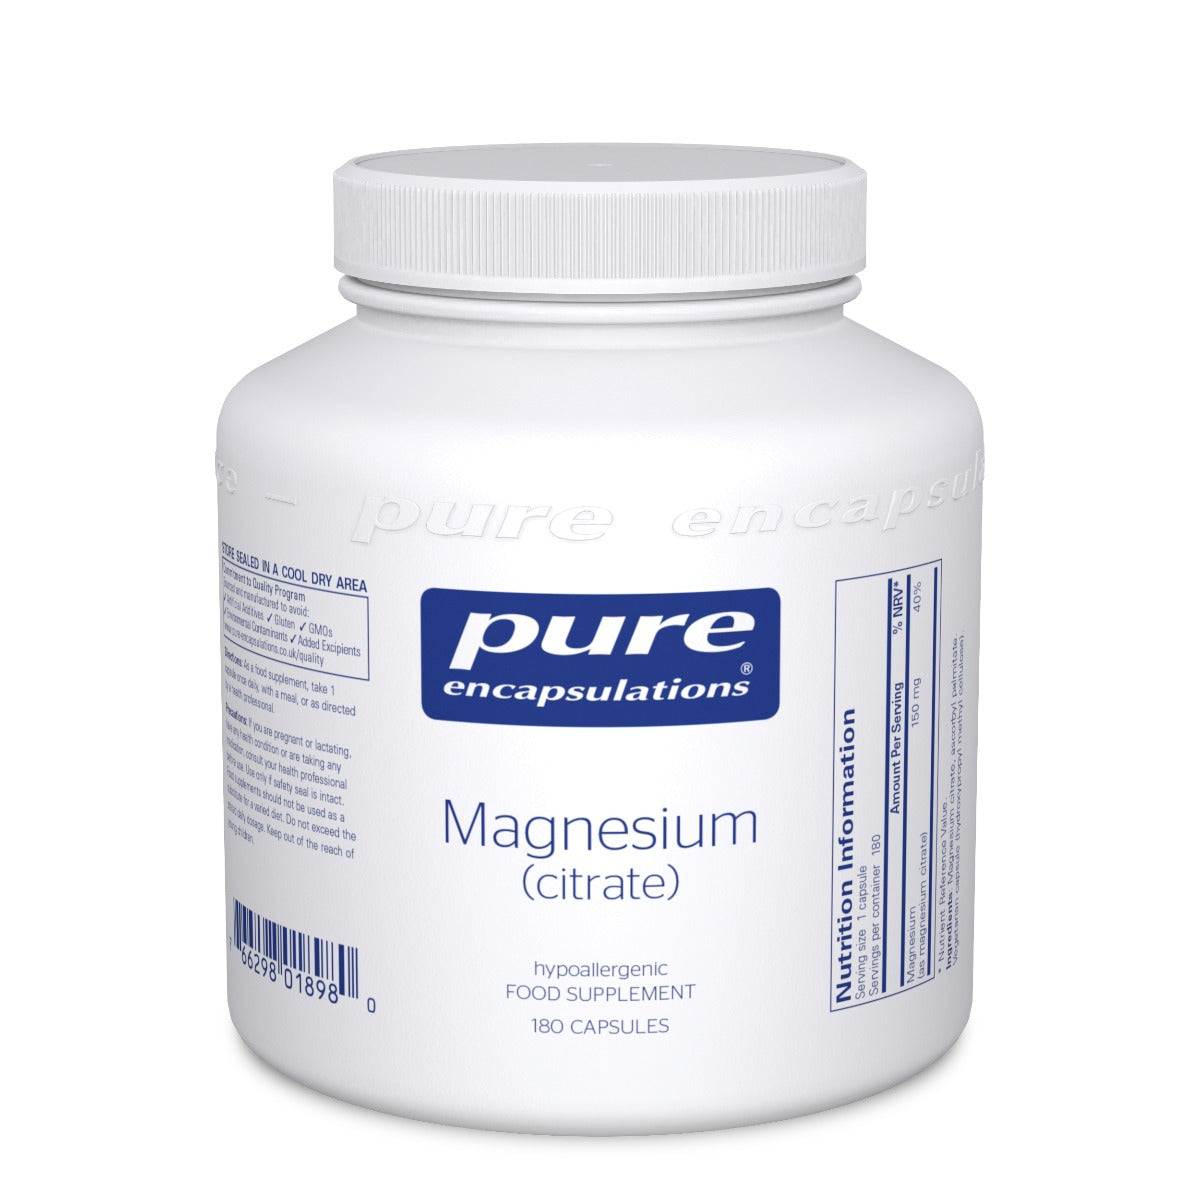 Magnesium (Citrate) - 180 Capsules | Pure Encapsulations